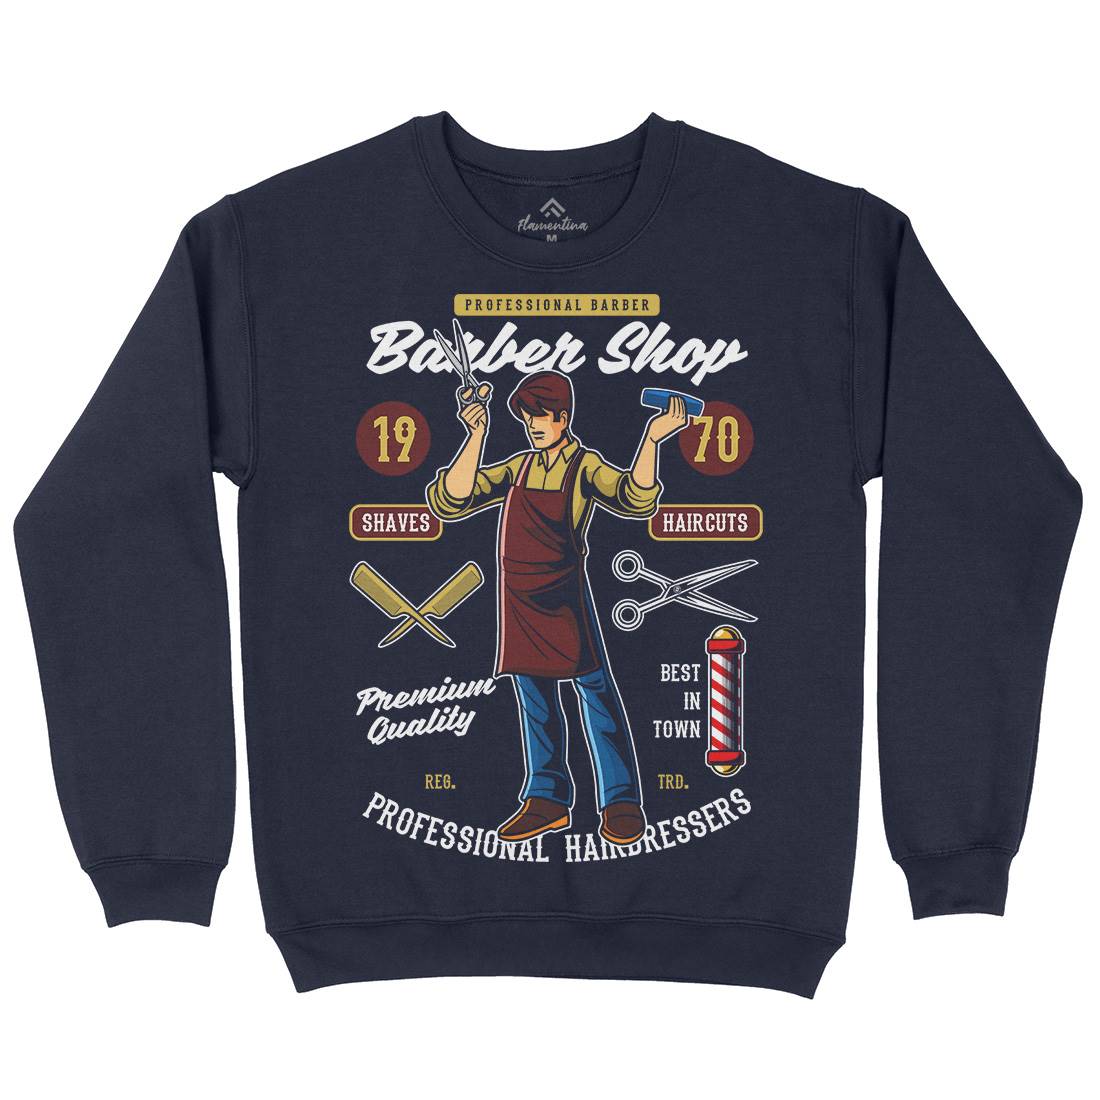 Shop Kids Crew Neck Sweatshirt Barber C310